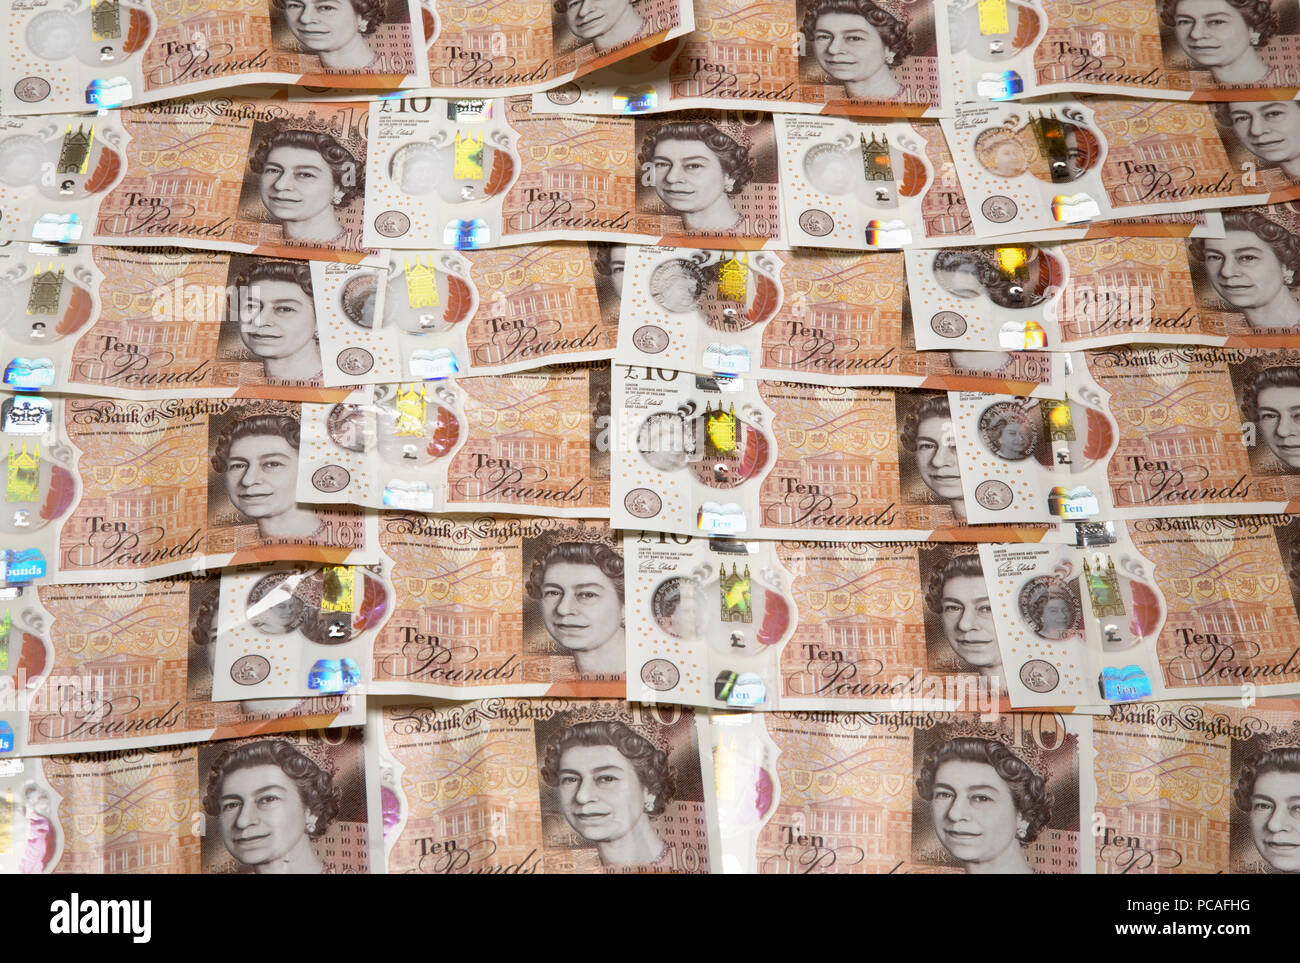 Ten pound notes. Stock Photo